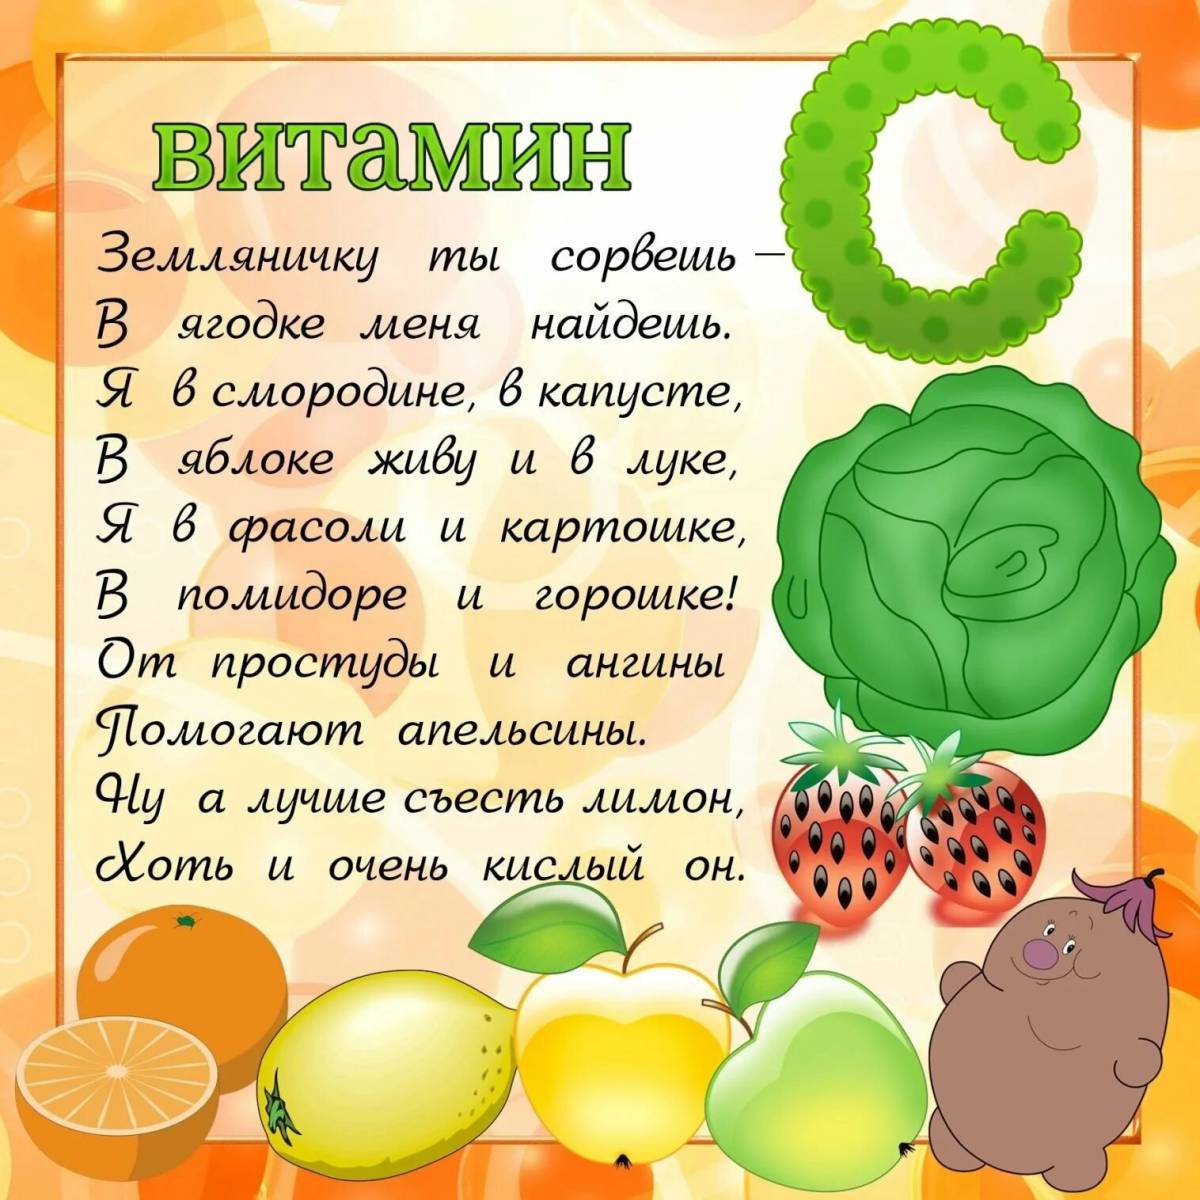 Витамины для детей в овощах и фруктах #13